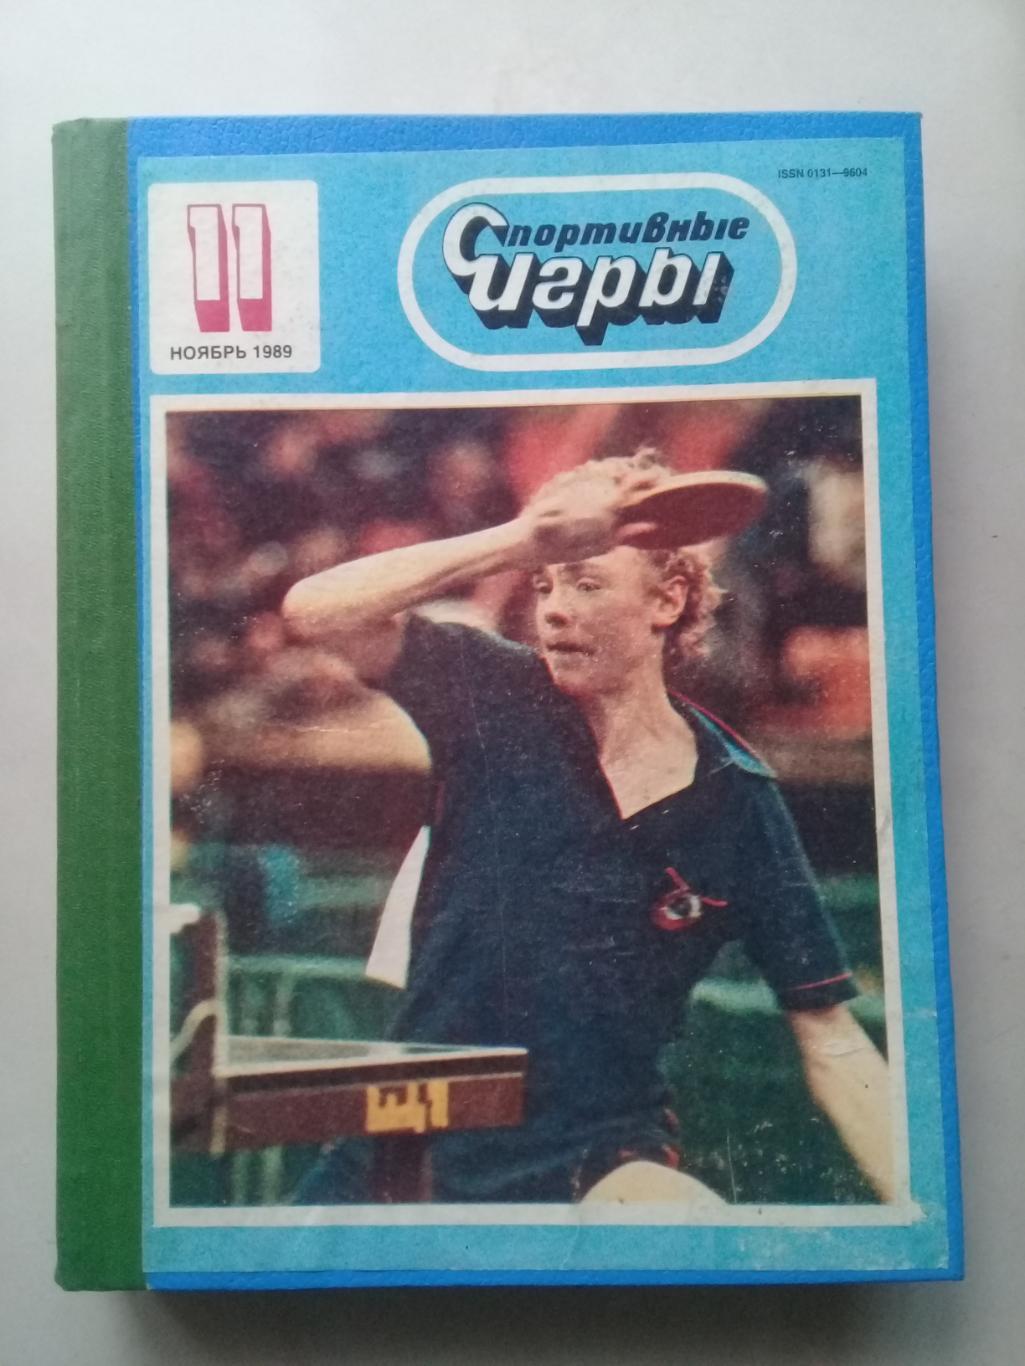 (Только для dk7586) Журнал Спортивные игры 1989 год. Годовой комплект.